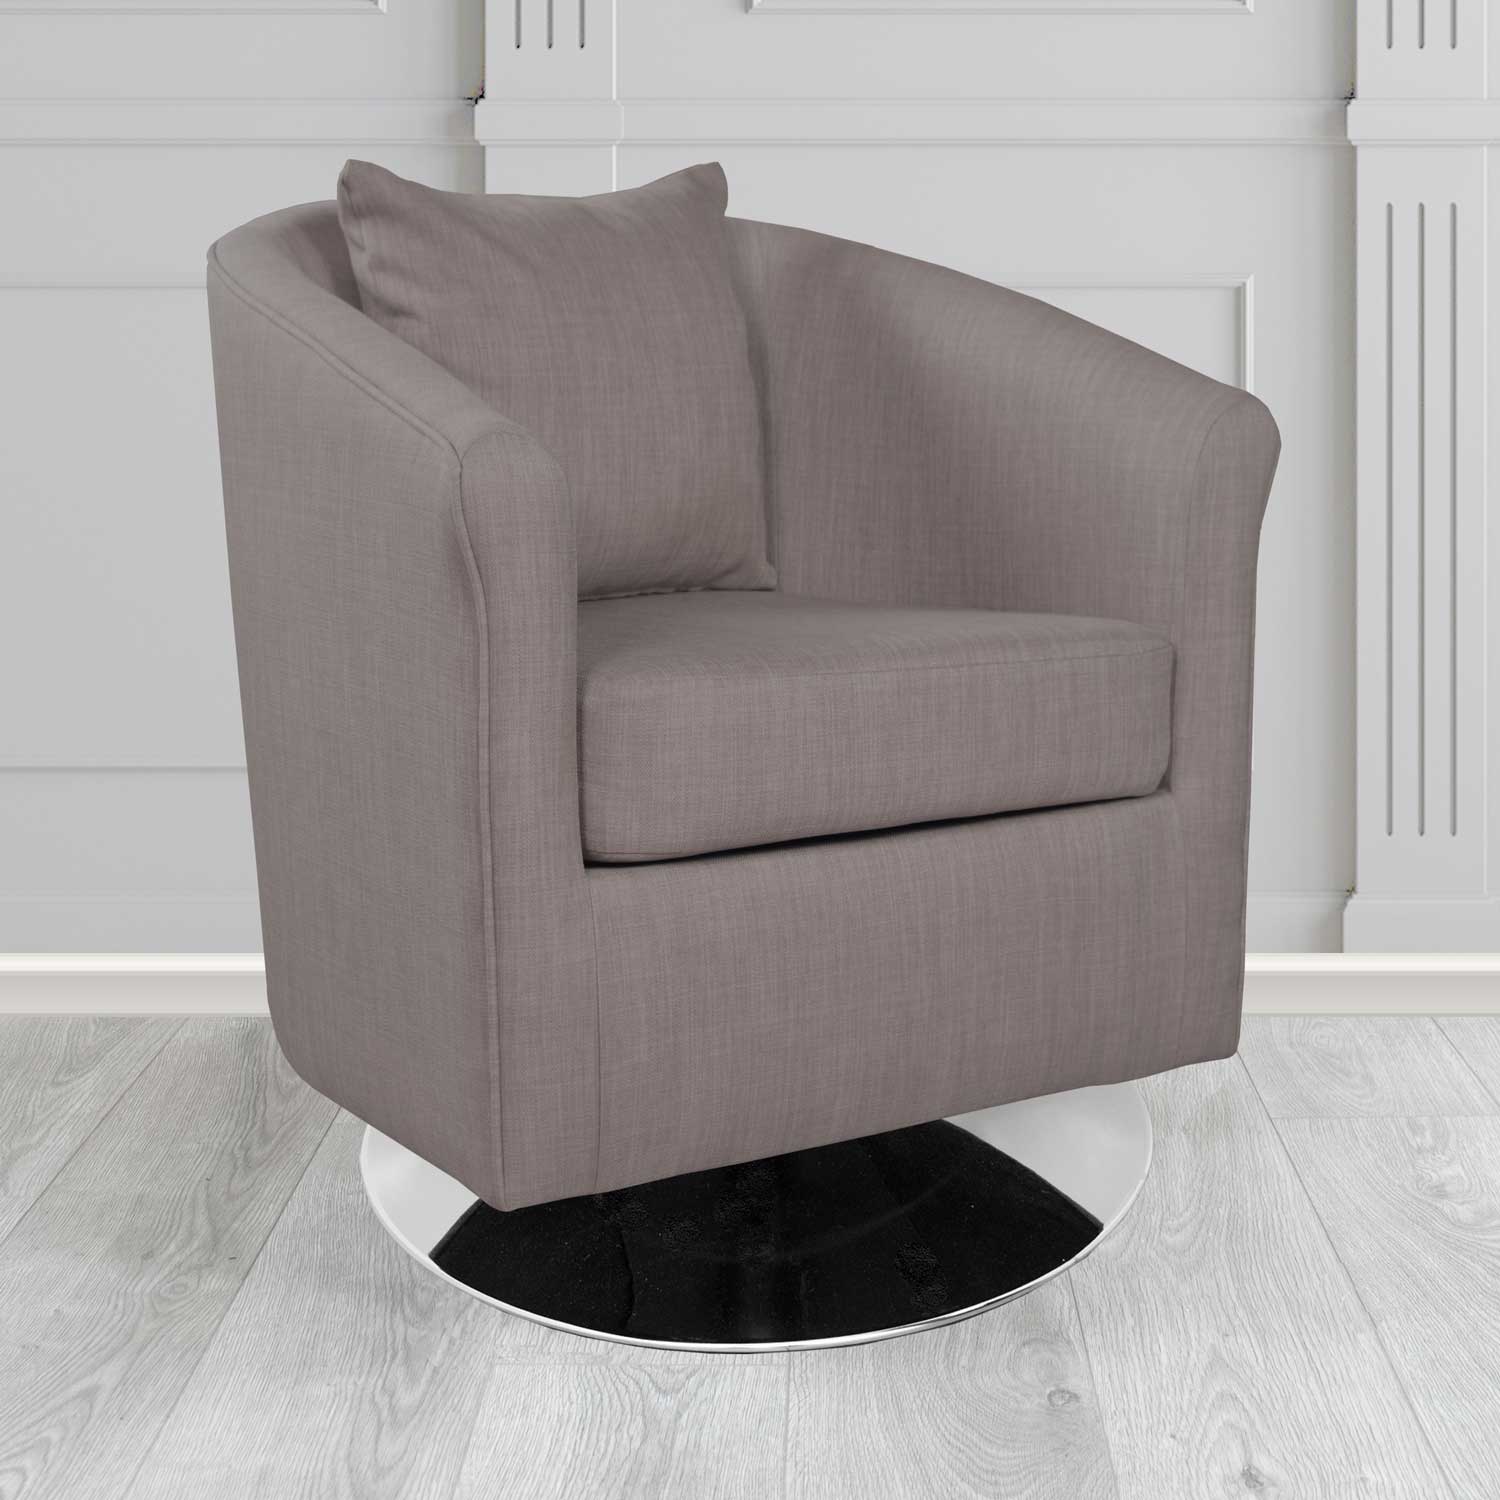 St Tropez Charles Slate Plain Linen Fabric Swivel Tub Chair - The Tub Chair Shop